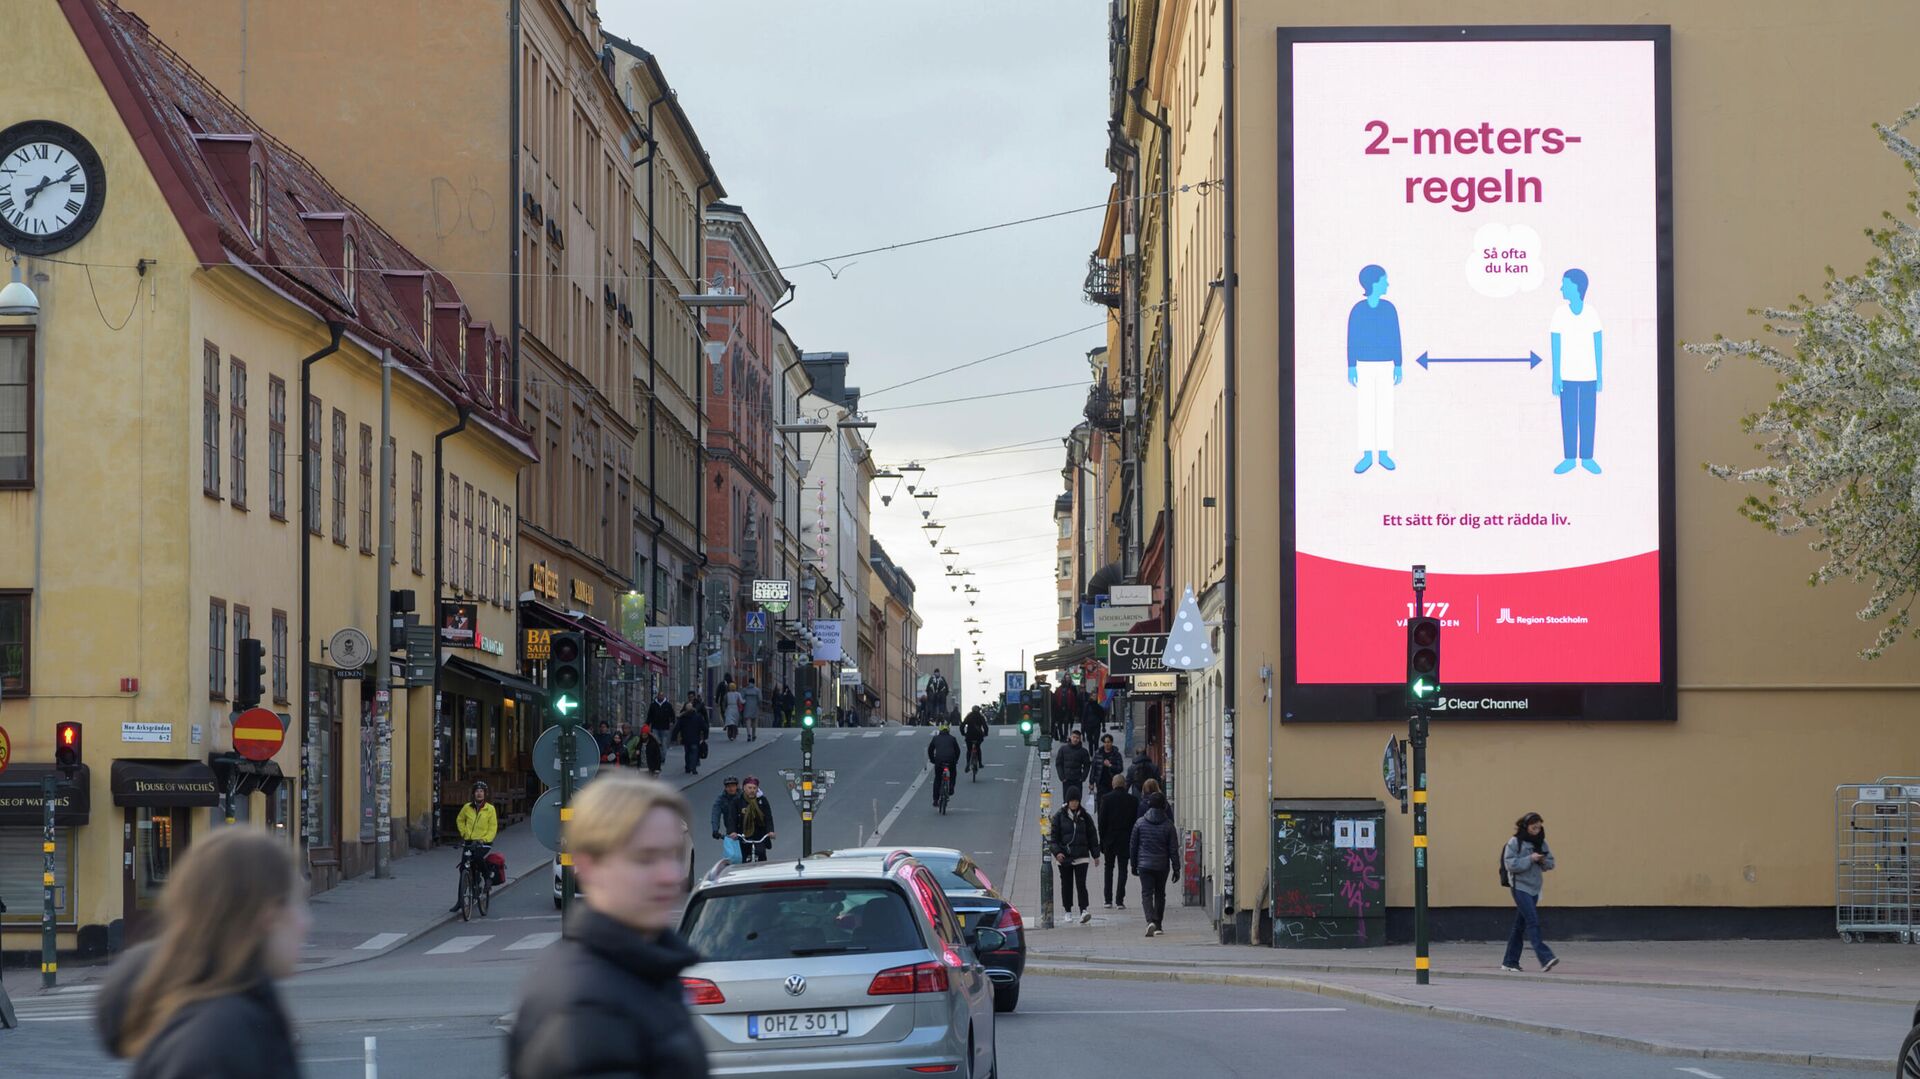 Плакат с напоминанием о социальной дистанции на фасаде дома в Стокгольме, Швеция  - РИА Новости, 1920, 05.06.2020